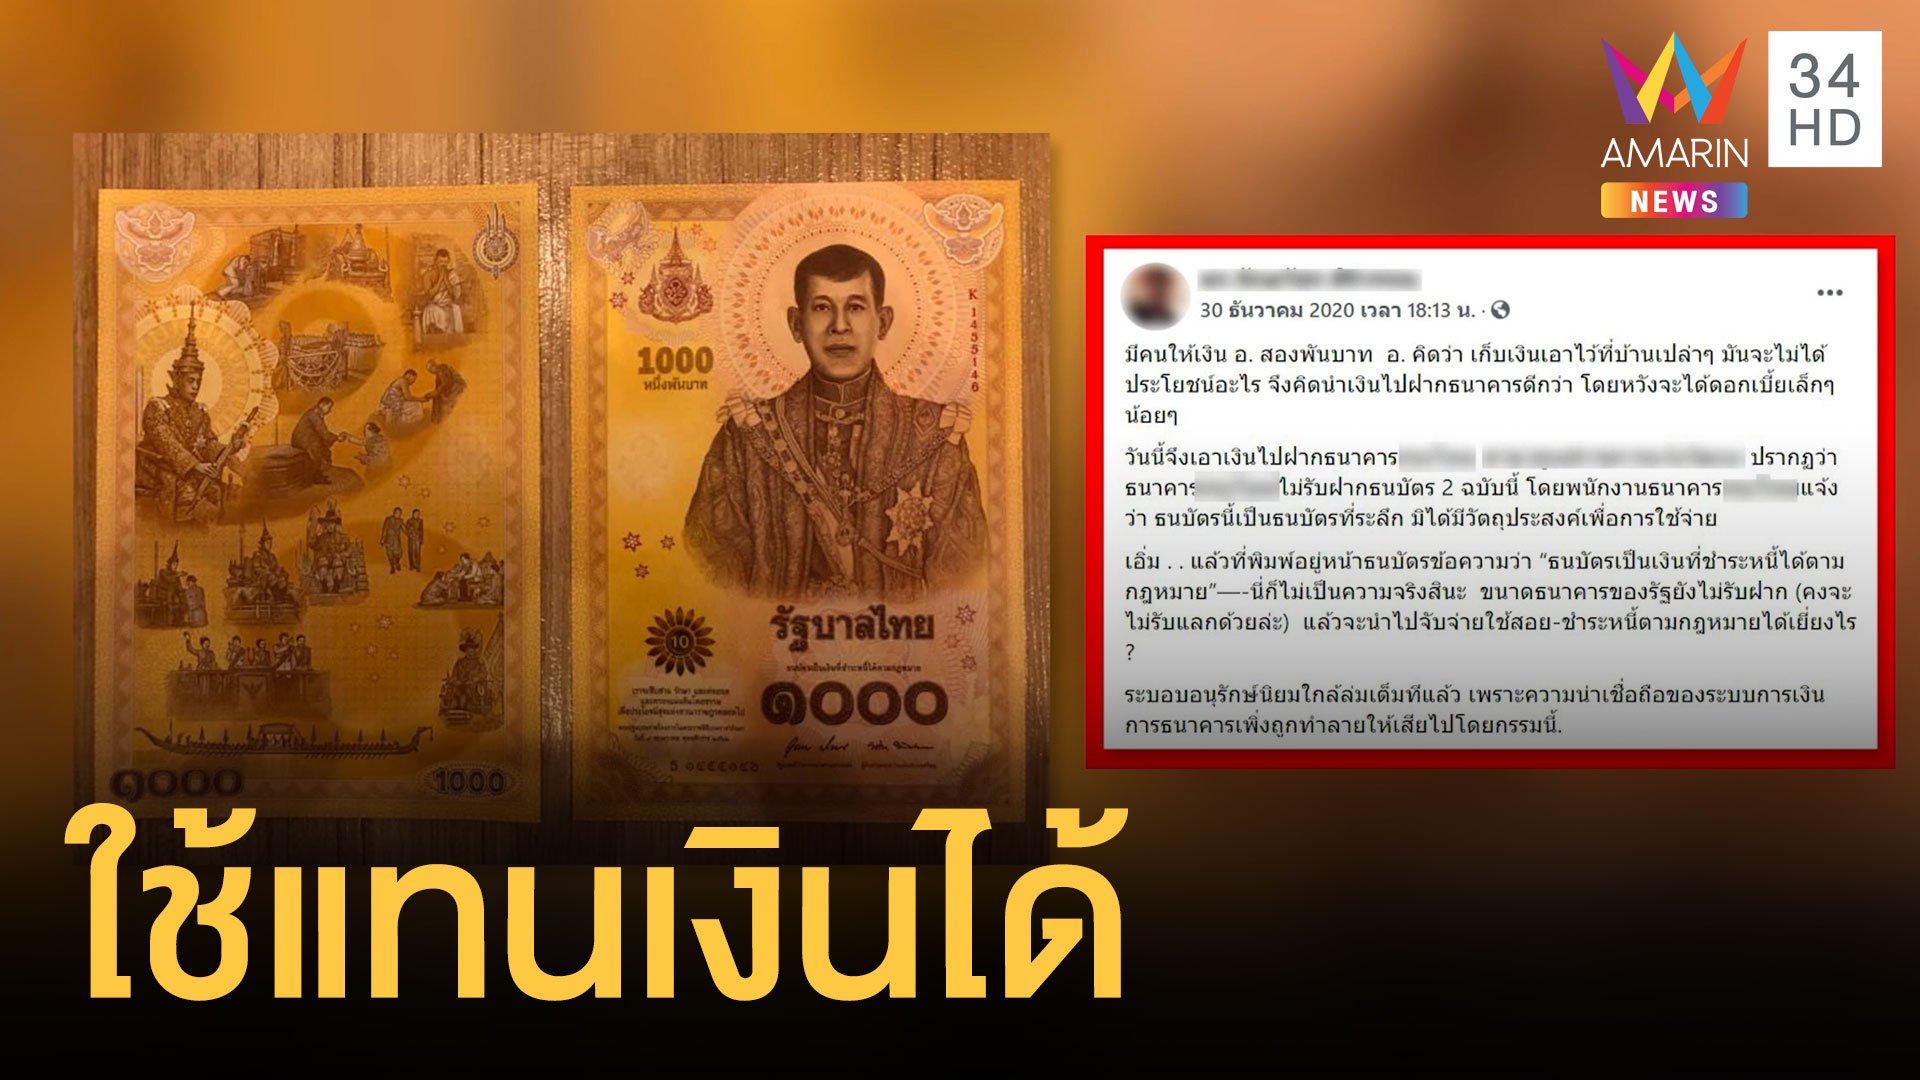 ไม่รับฝากแบงก์ที่ระลึก 1000 บาท ธนาคารไทยบอกแล้วชำระหนี้ได้ | ข่าวอรุณอมรินทร์ | 4 ม.ค. 64 | AMARIN TVHD34